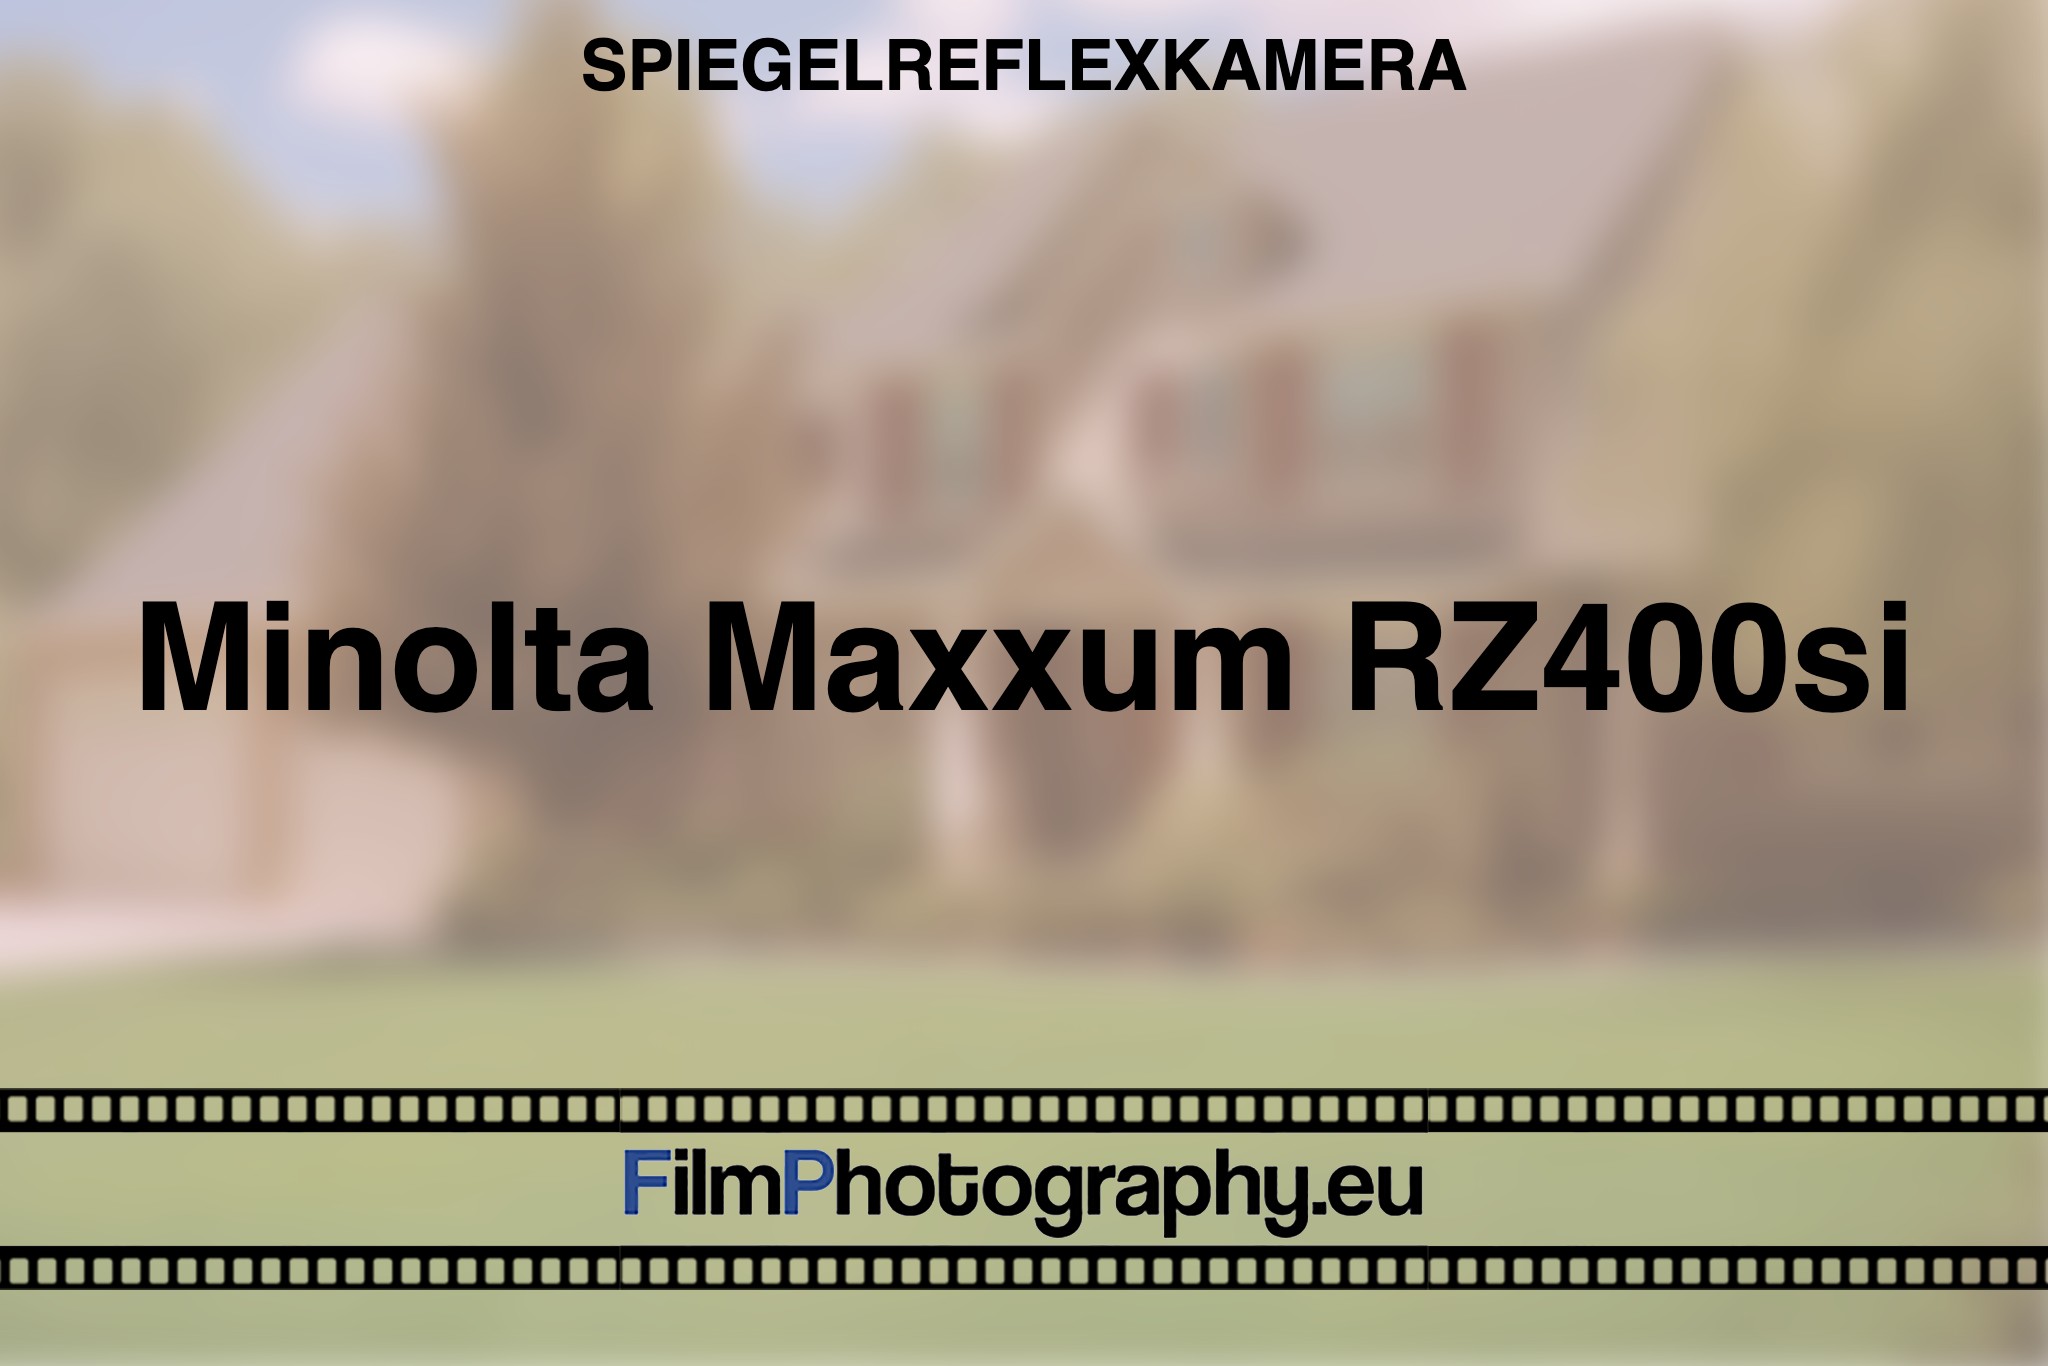 minolta-maxxum-rz400si-spiegelreflexkamera-bnv